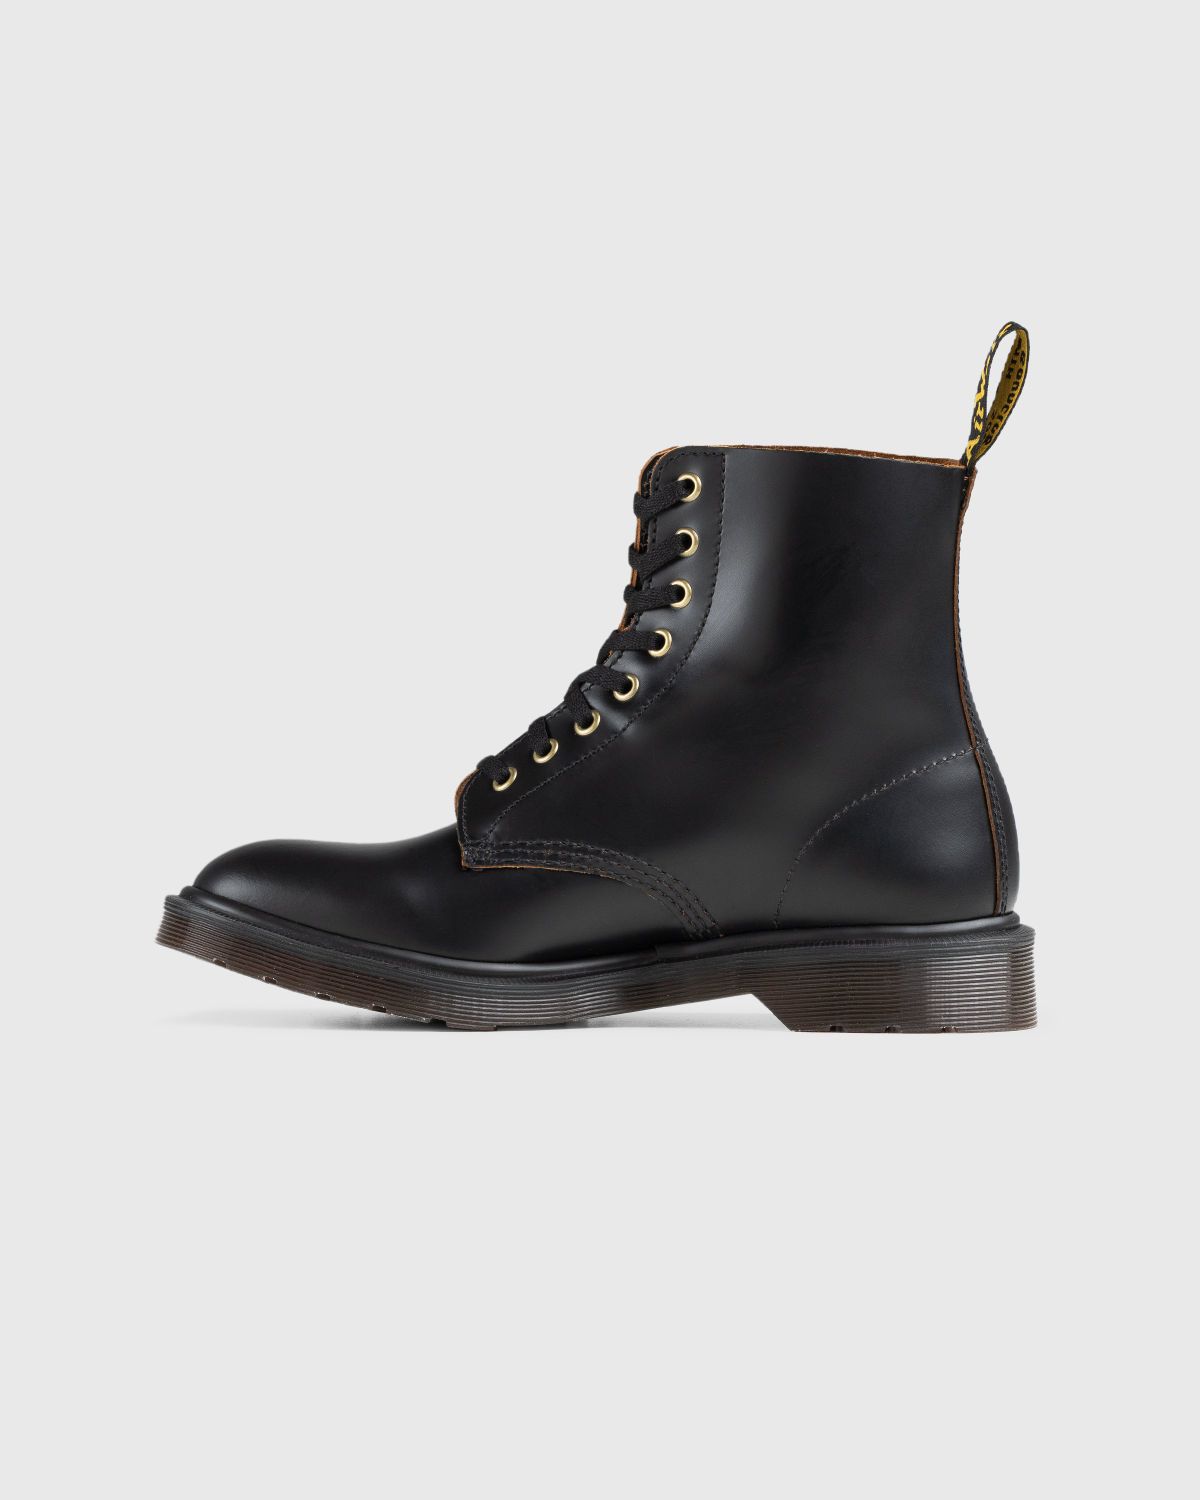 Dr. Martens – 1460 Vintage Smooth Black - Boots - Black - Image 2